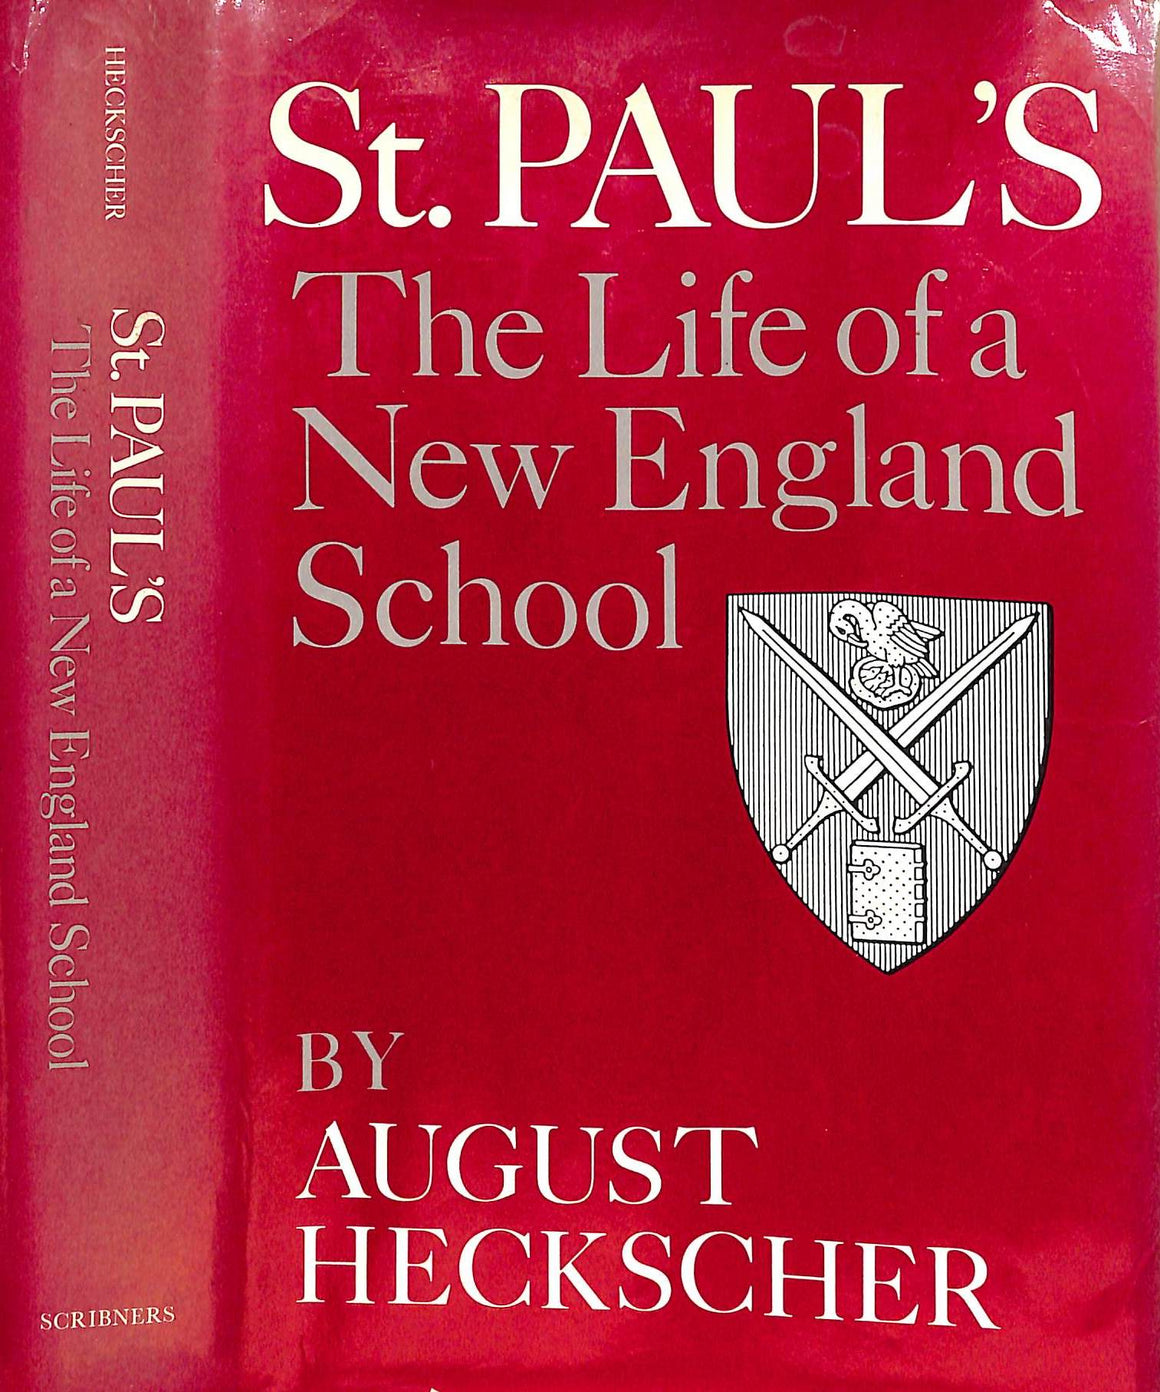 "St. Paul's: The Life of a New England School" 1980 HECKSCHER, August